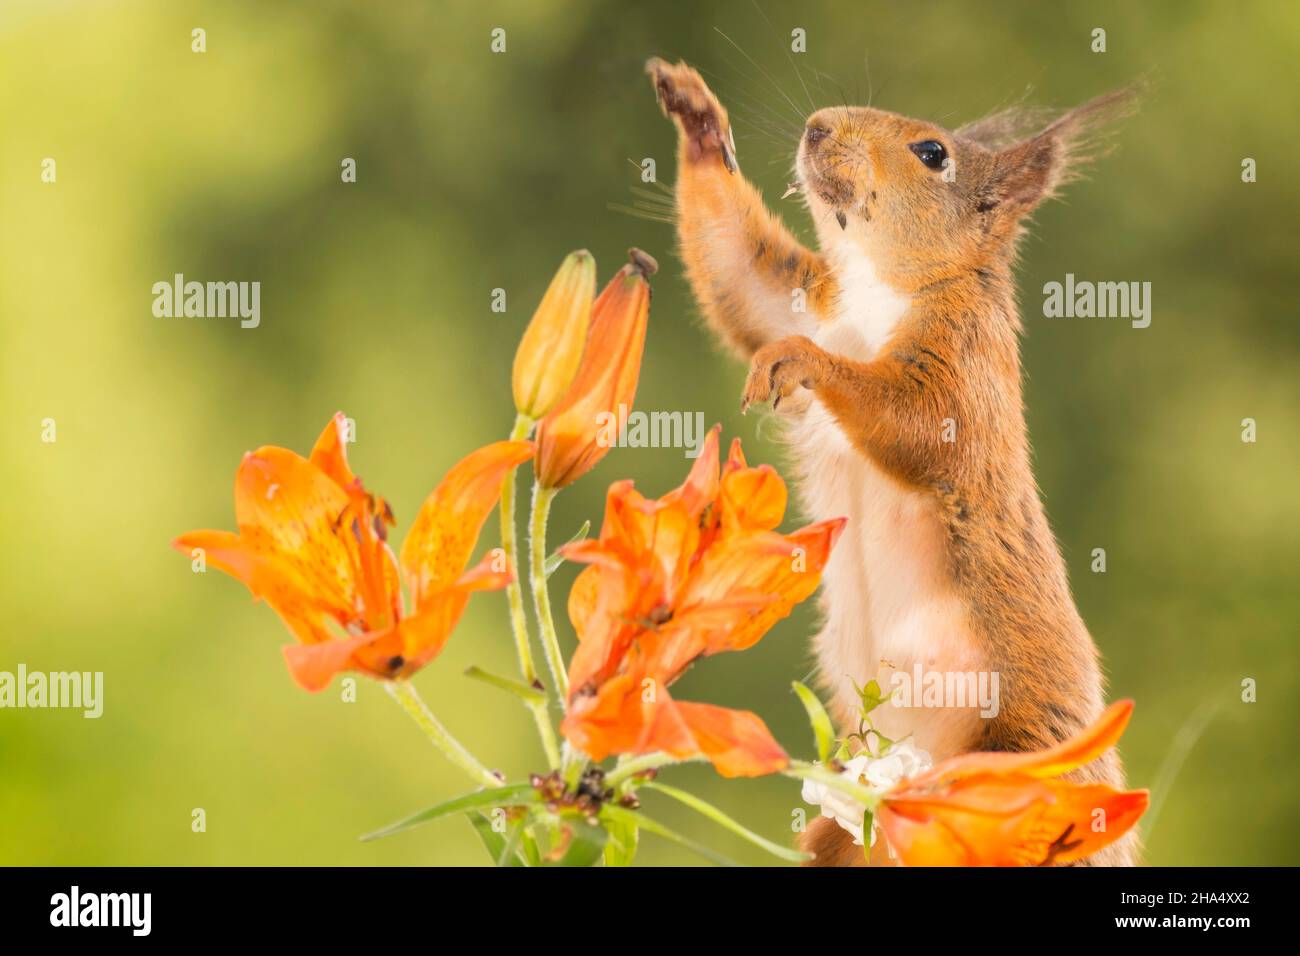 Nahaufnahme eines roten Eichhörnchens hinter orangen Lilienblüten, die sich herausstreckten Stockfoto